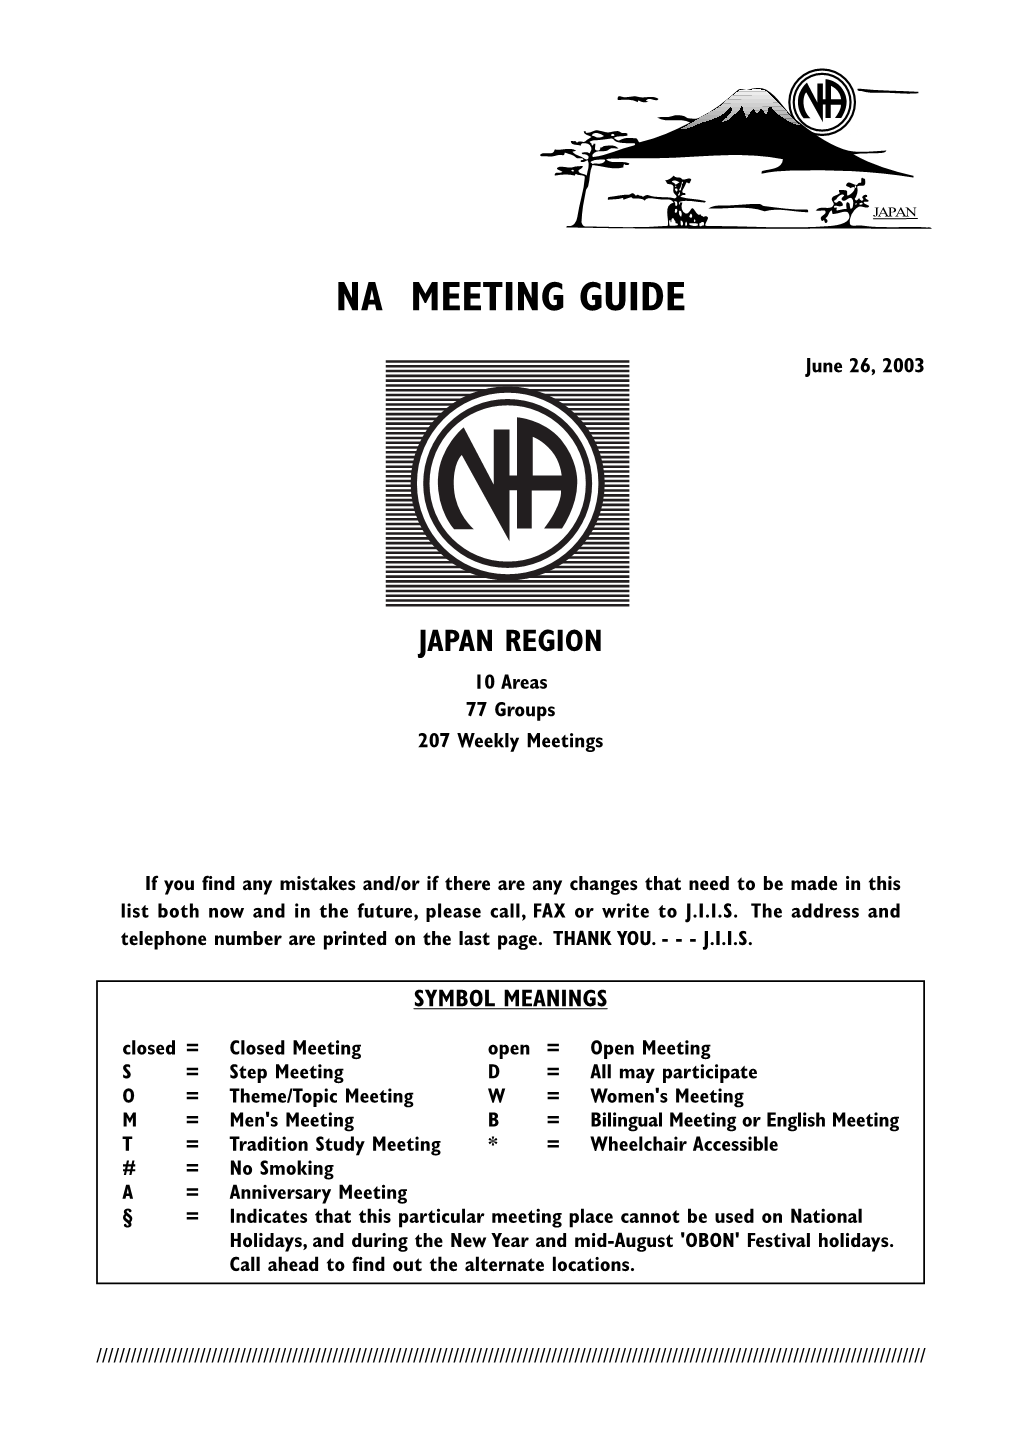 Japan Region Meeting List June 2003